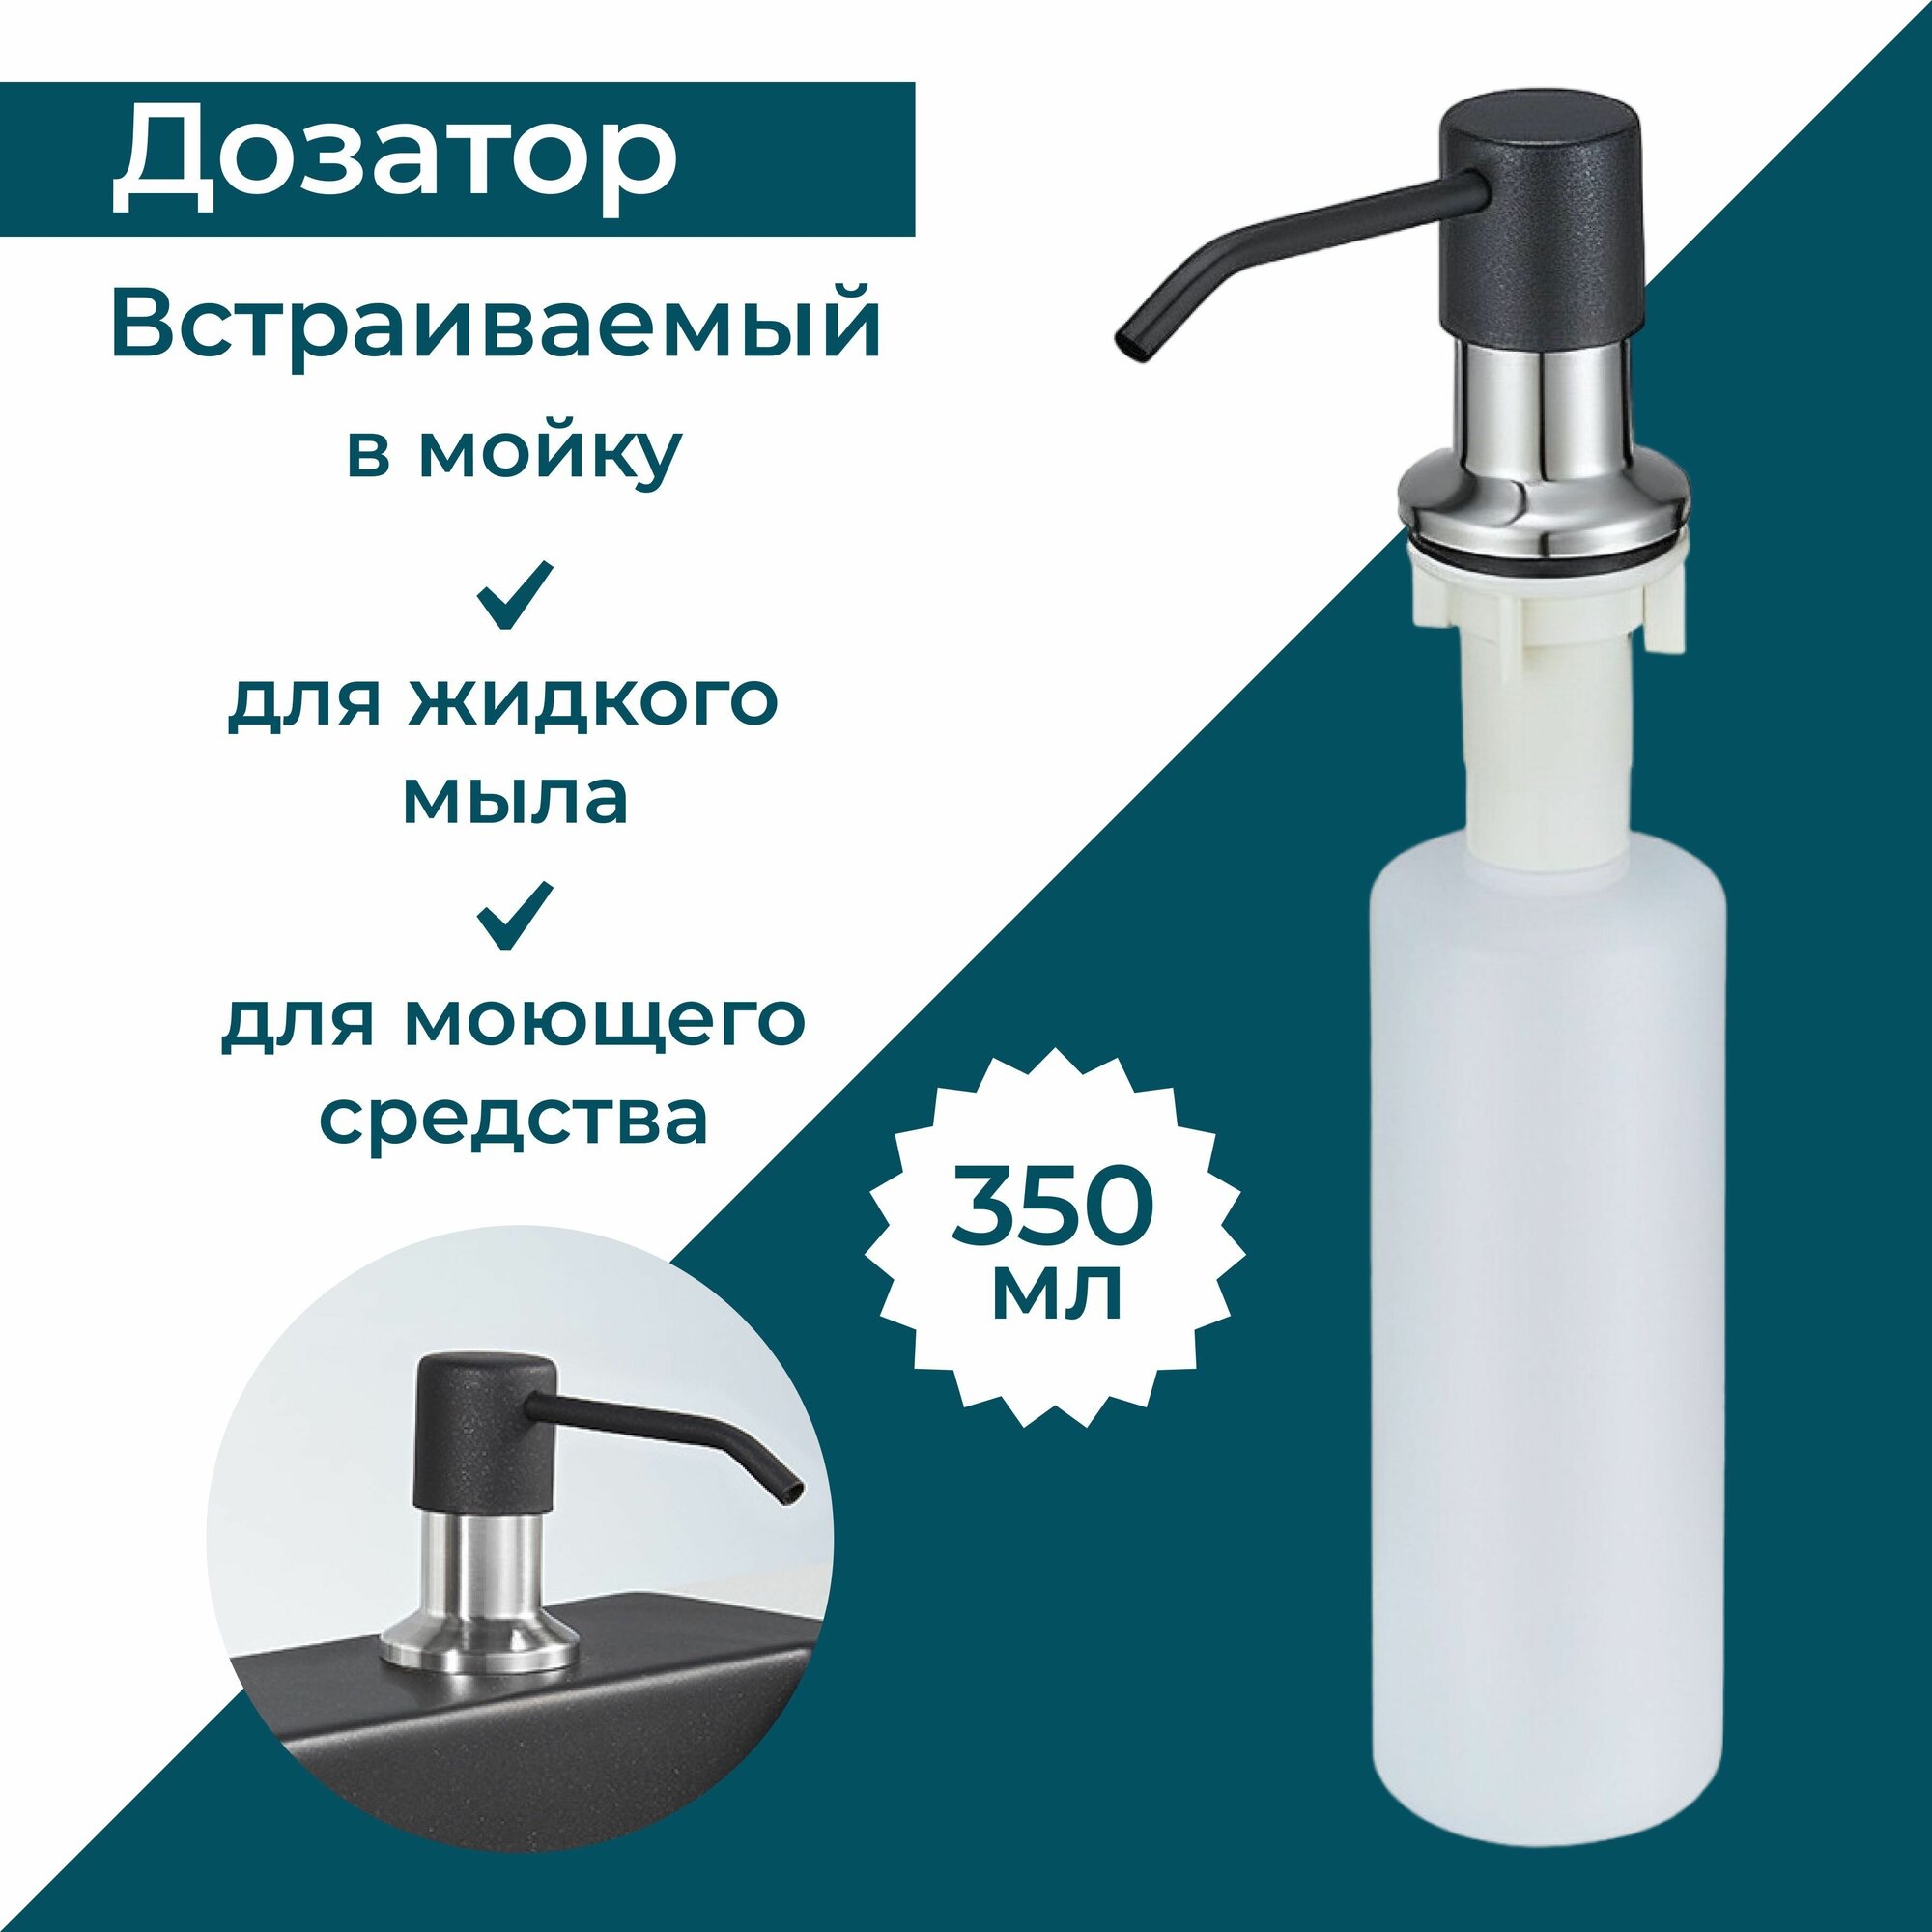 Дозатор для жидкого мыла Диспенсер для моющего средства на кухню и в ванную Granula 350 мл. Цвет чёрный